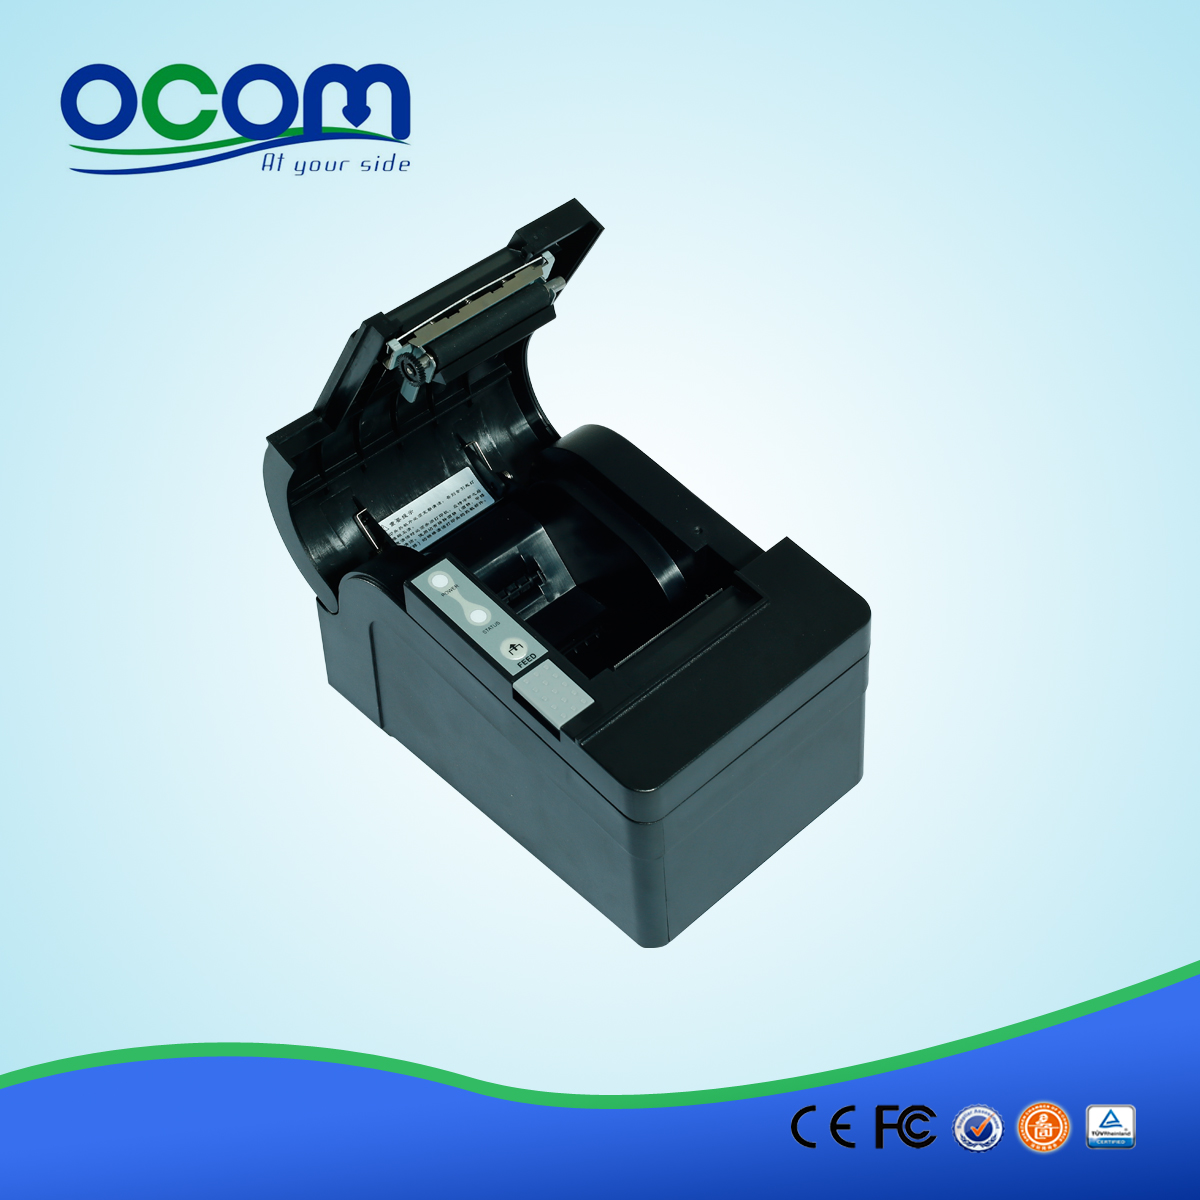 58mm والروبوت السيارات القاطع الحراري استلام printer-- OCPP-58C